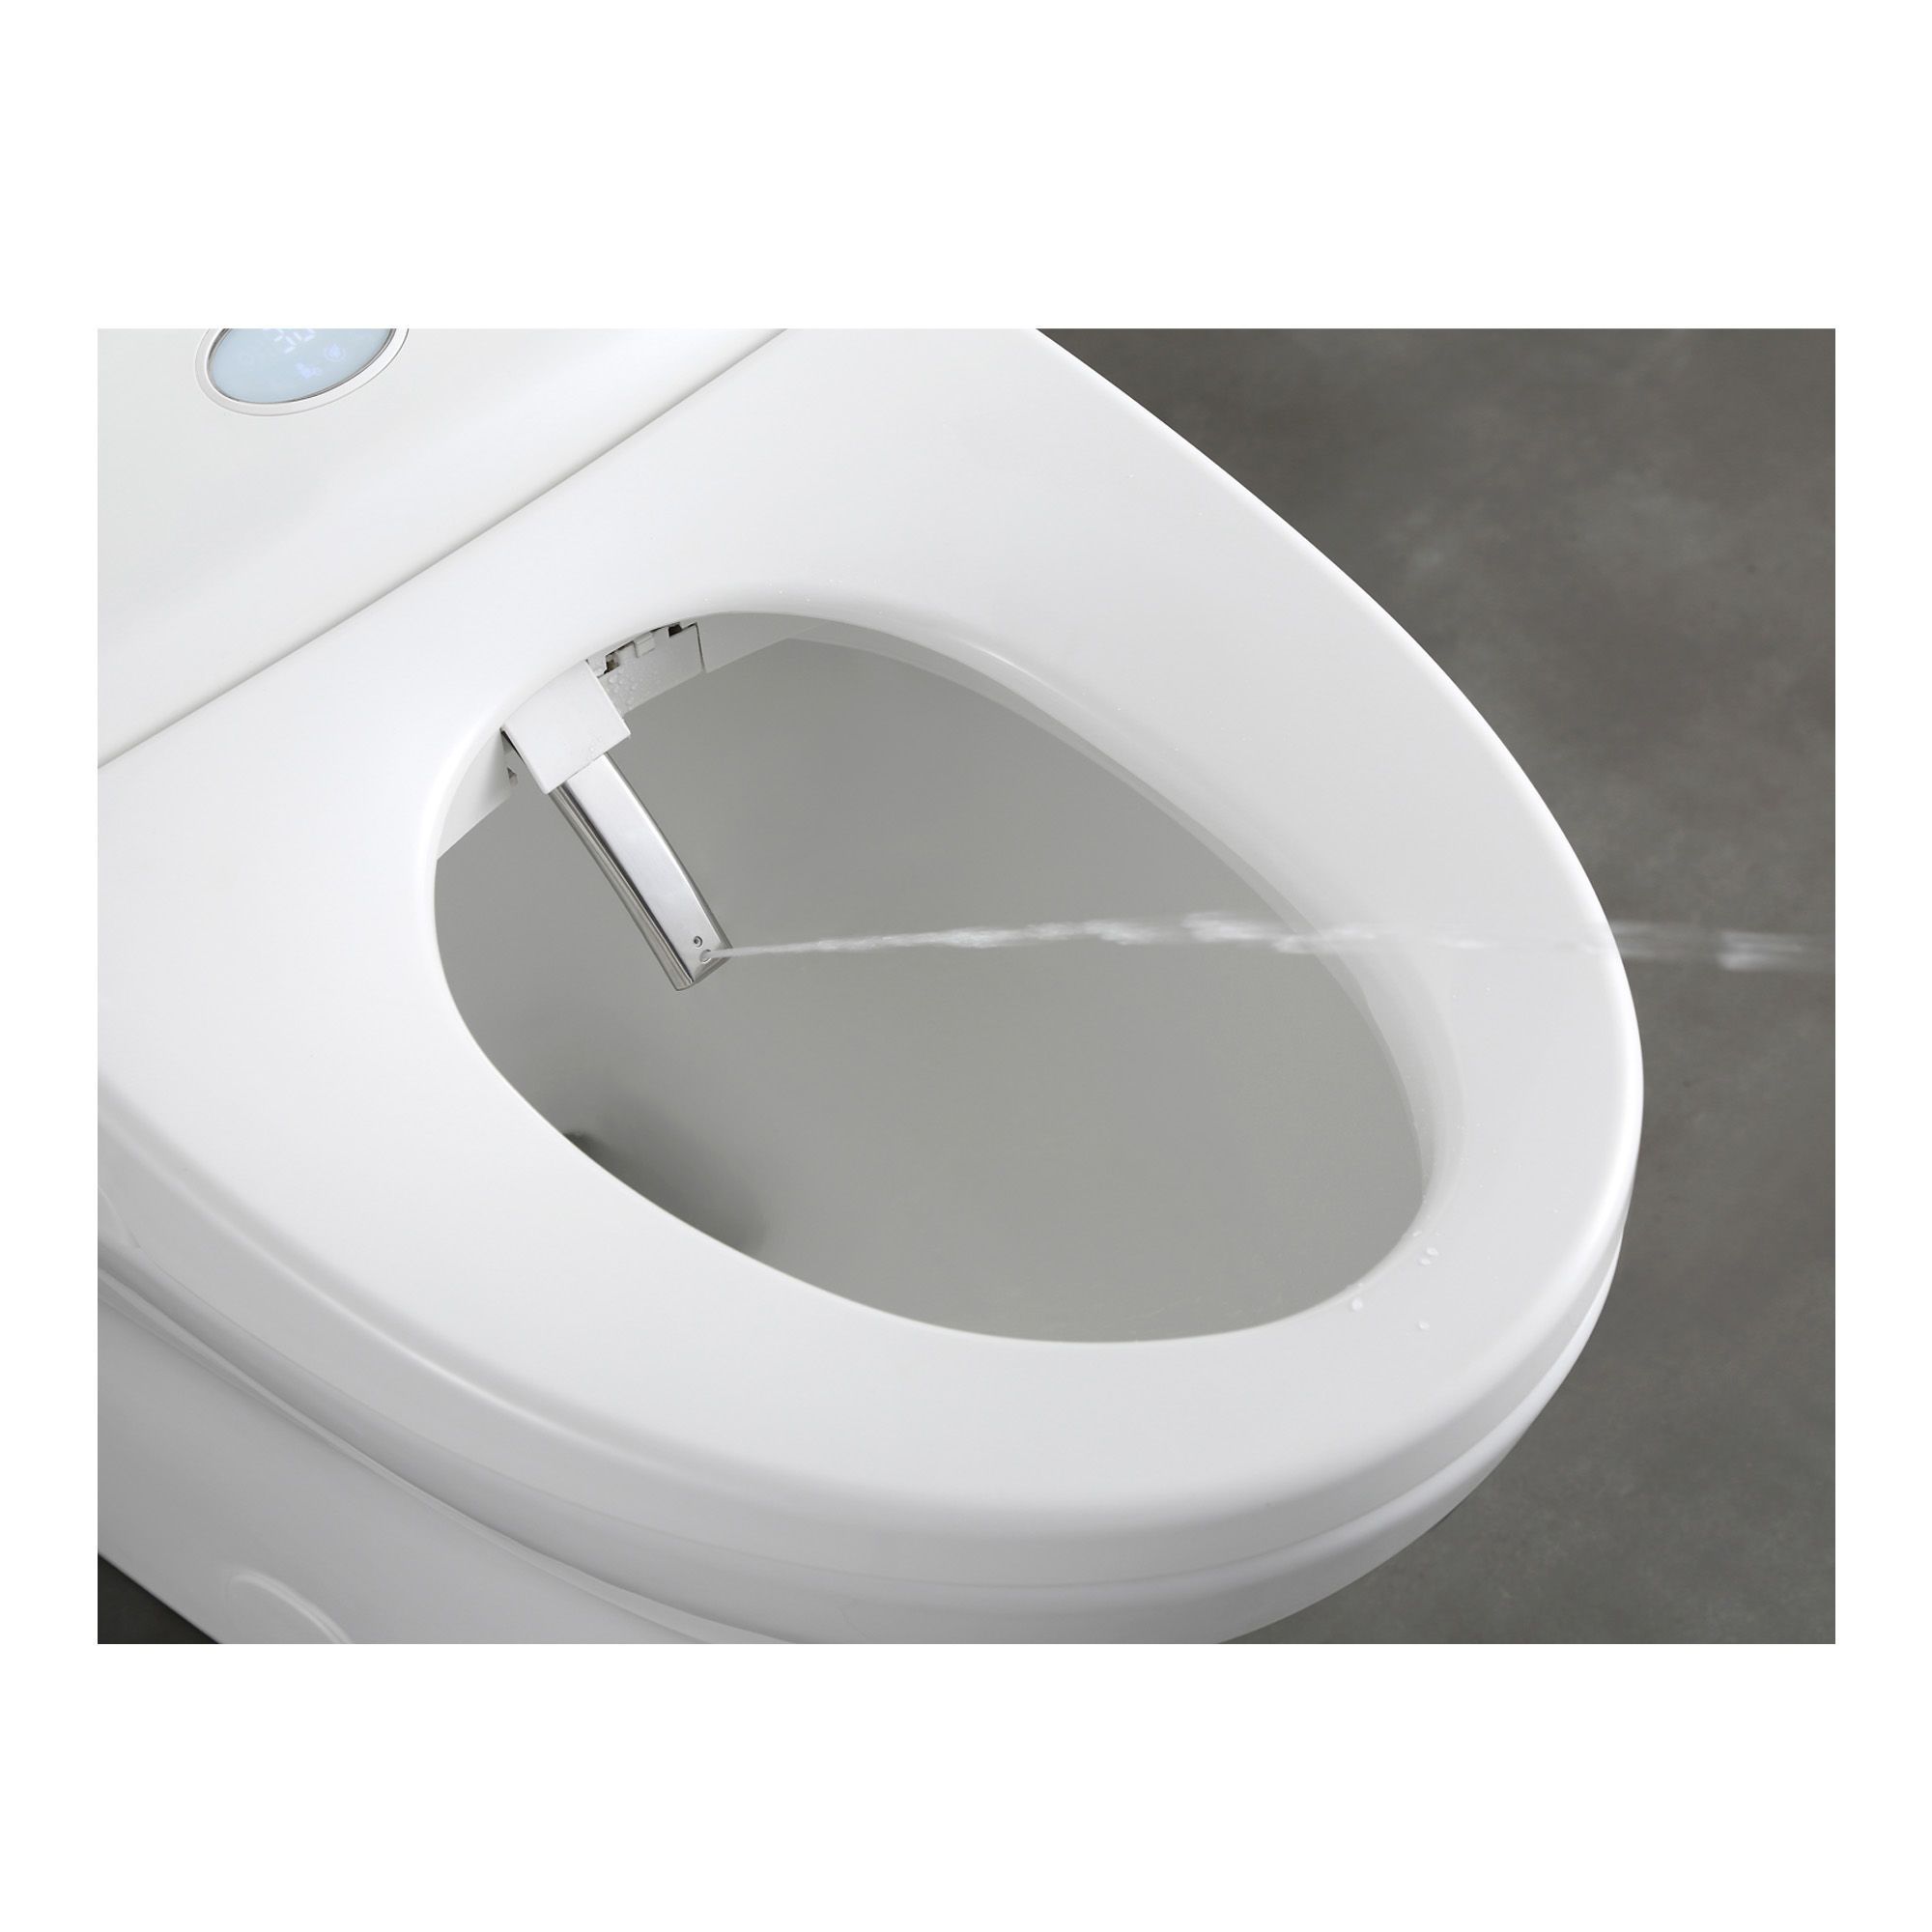 Toilette cuvette ronde Lucy, monopièce, chasse simple, 4,8 l, blanc